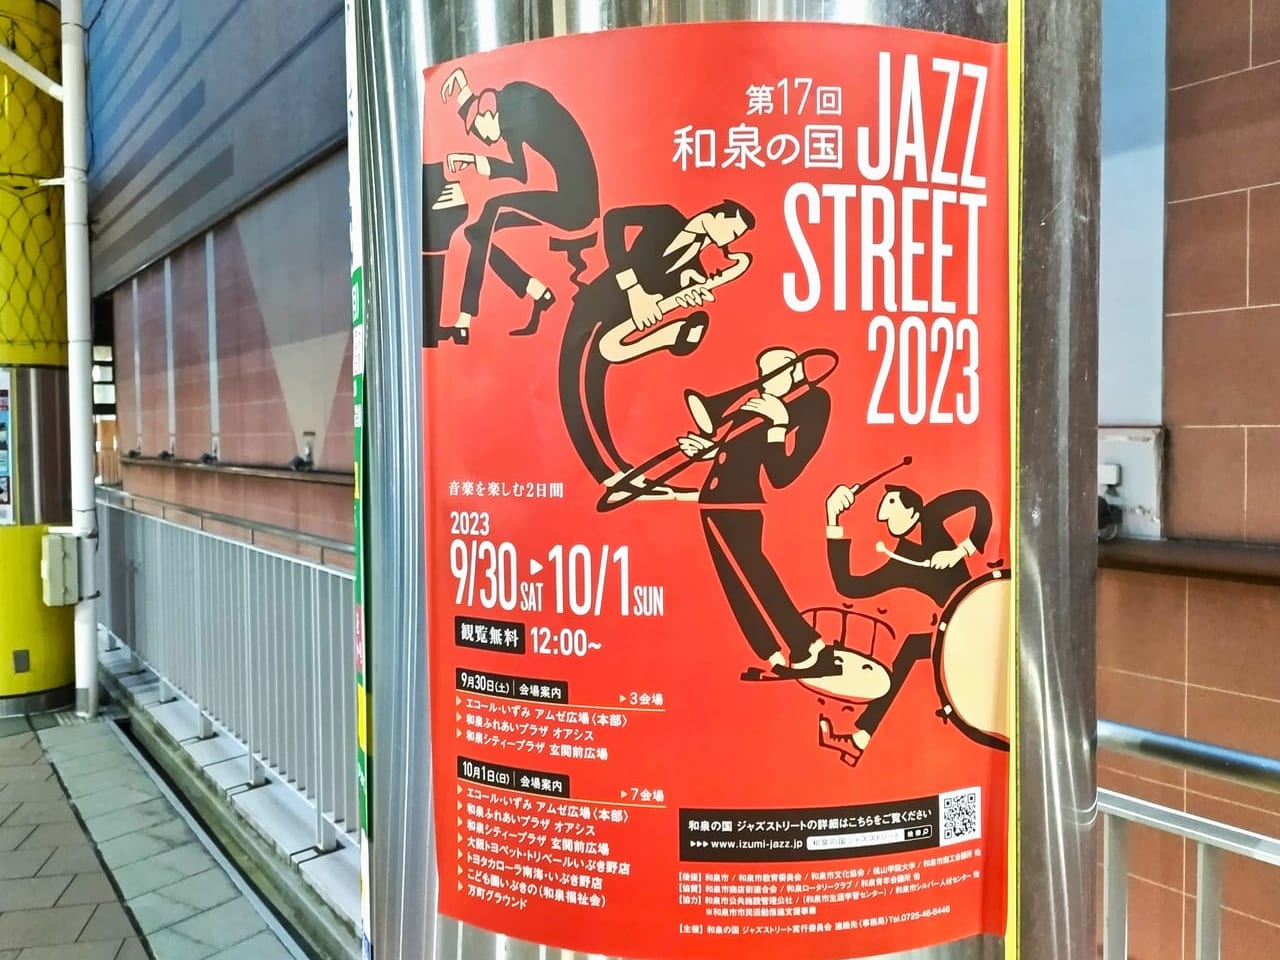 和泉の国JAZZ STREET2023